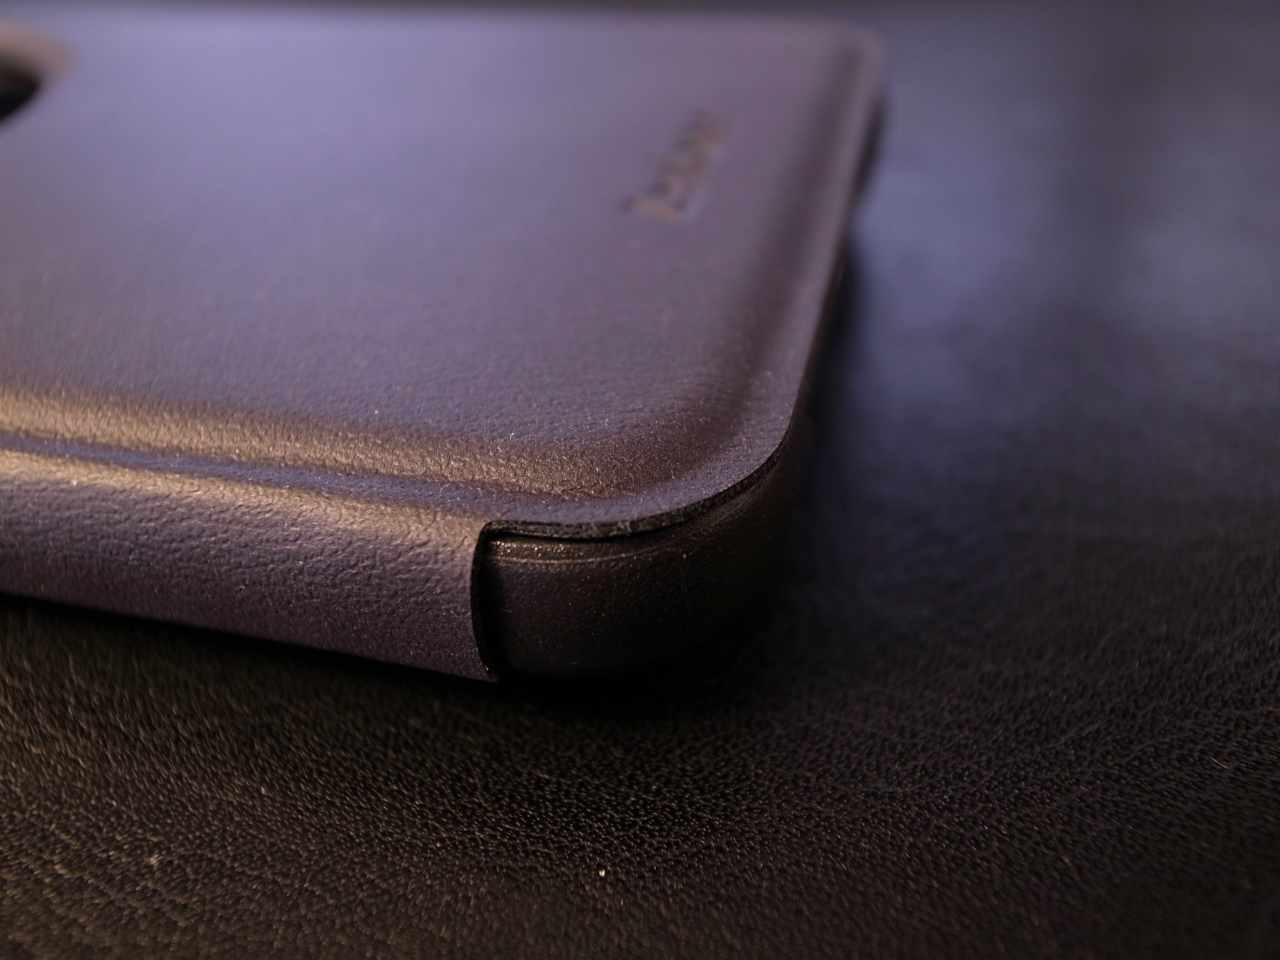 ZenFone Max VIEW FLIP CASE 上面カバーが本体からあまりはみ出さないように綺麗に大きさが合わせられています。